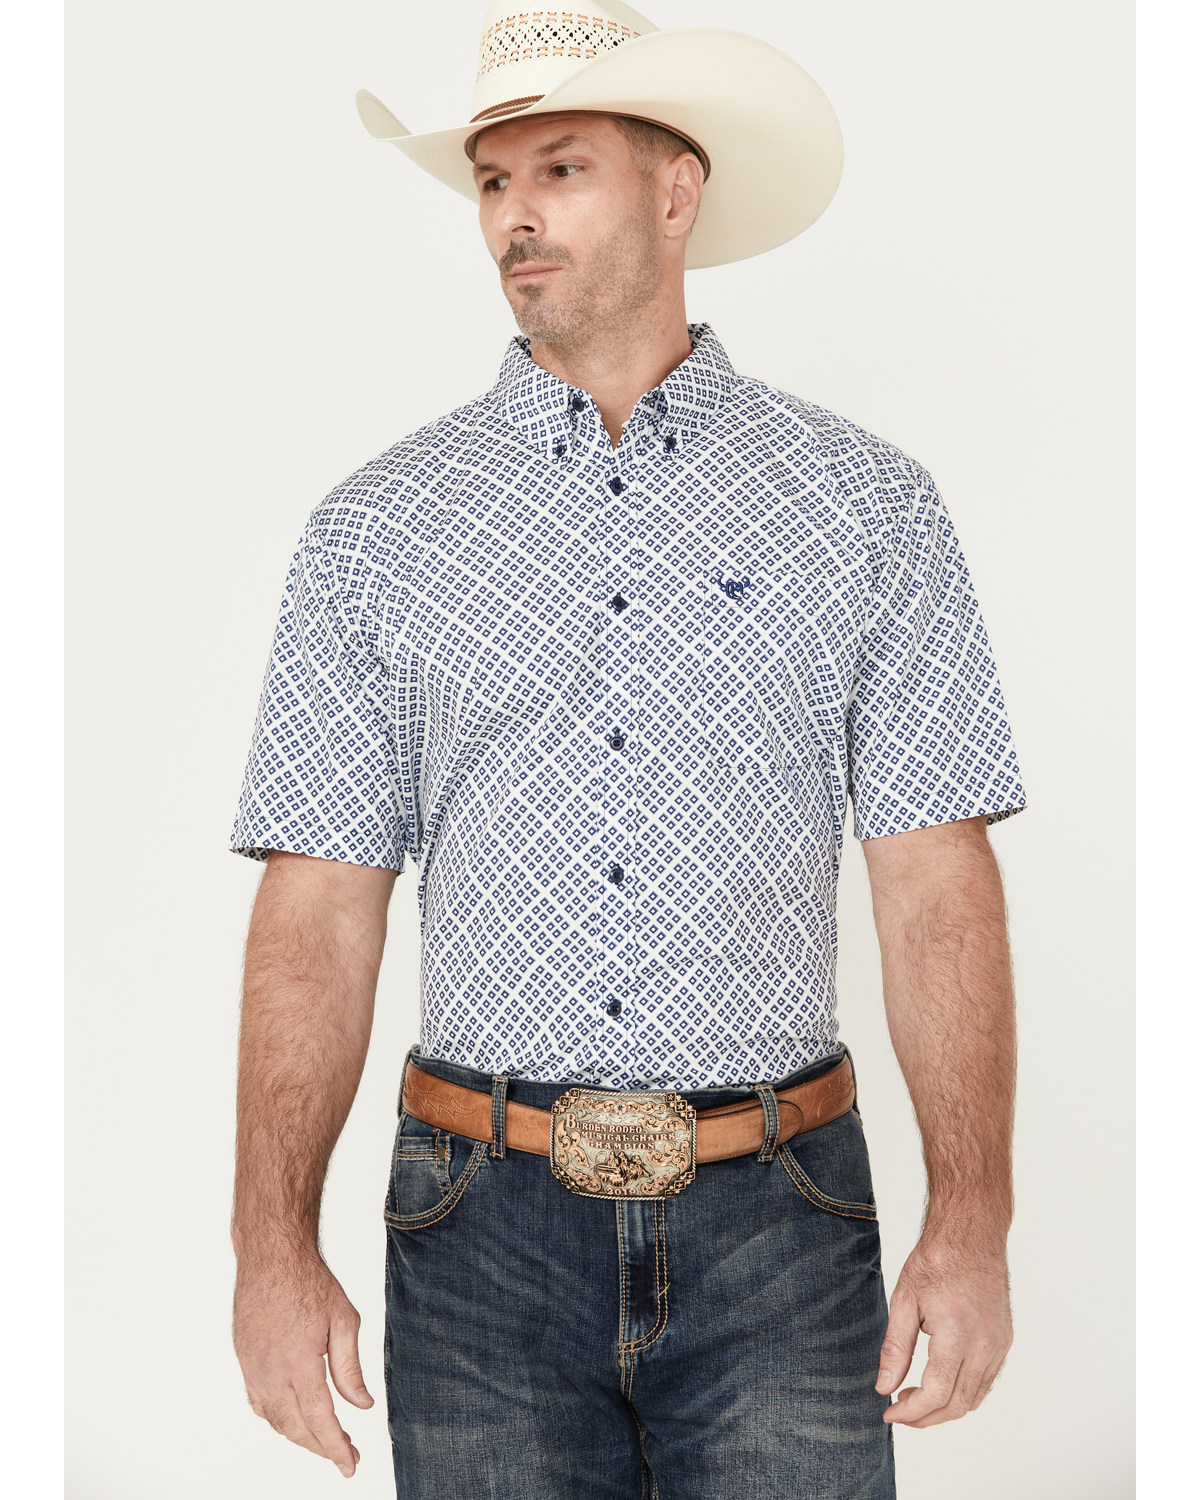 Cowboy Hardware Men's Wild Gem Geo Print Short Sleeve Button-Down Western Shirt